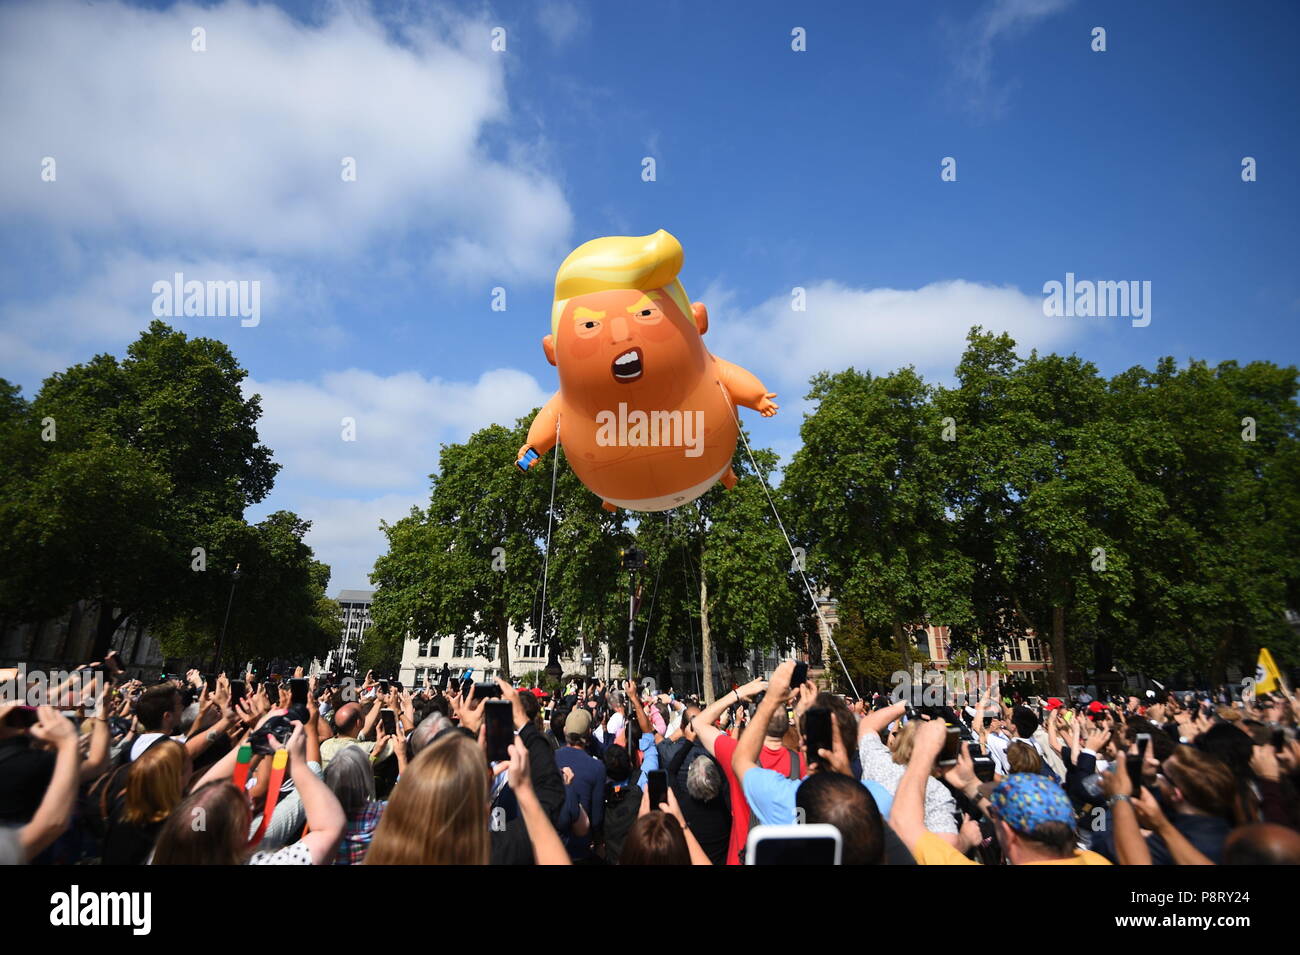 Einen "Baby Trump' Ballon steigt nach im Londoner Parlament Platz aufgeblasen wird, als Teil der Proteste gegen den Besuch von US-Präsident Donald Trump nach Großbritannien. Stockfoto